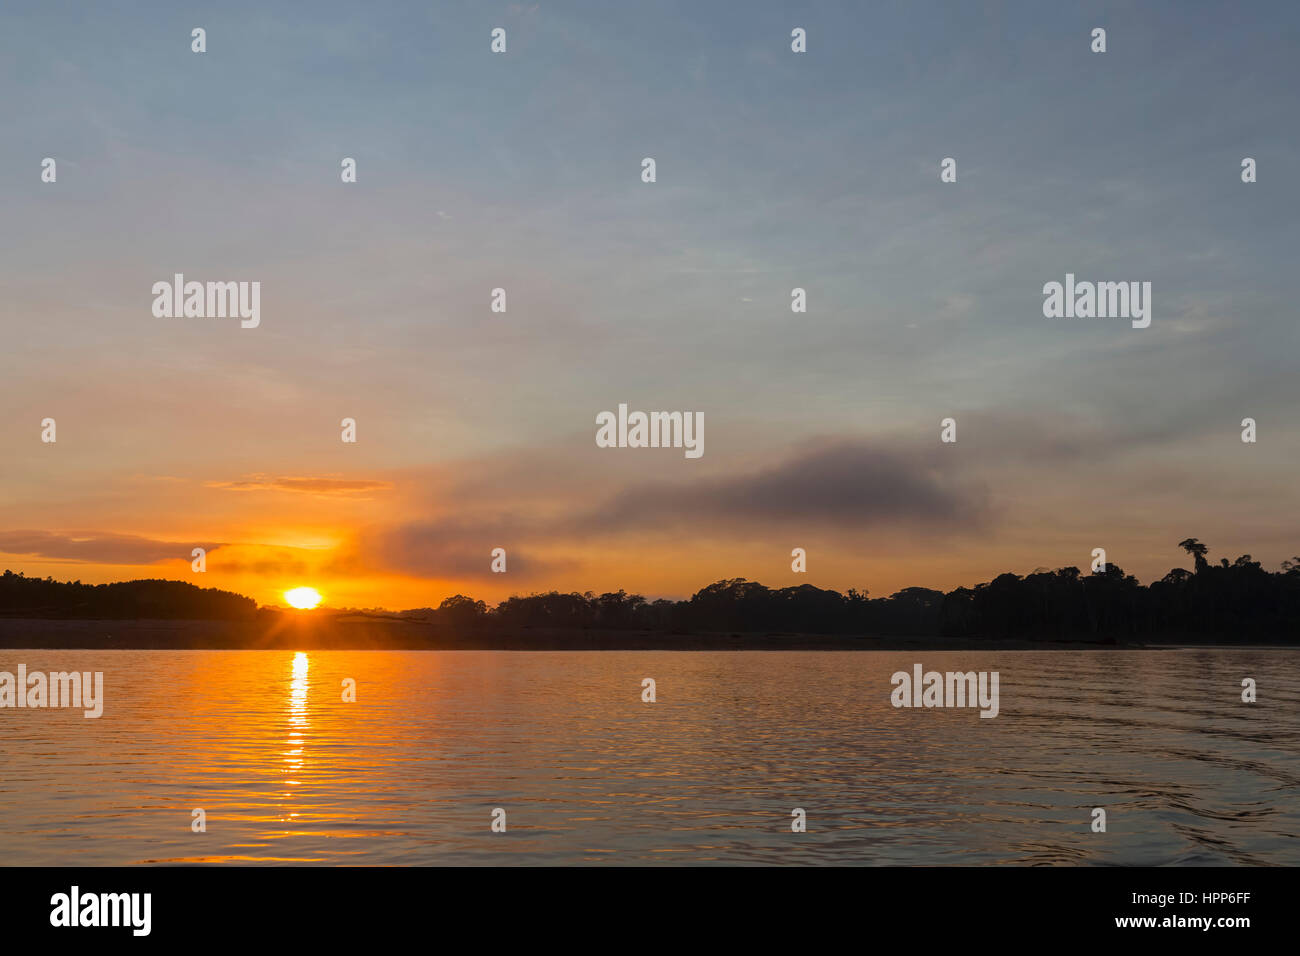 Peru, Amazon basin, Manu National Park, Rio Madre de Dios at sunset Stock Photo